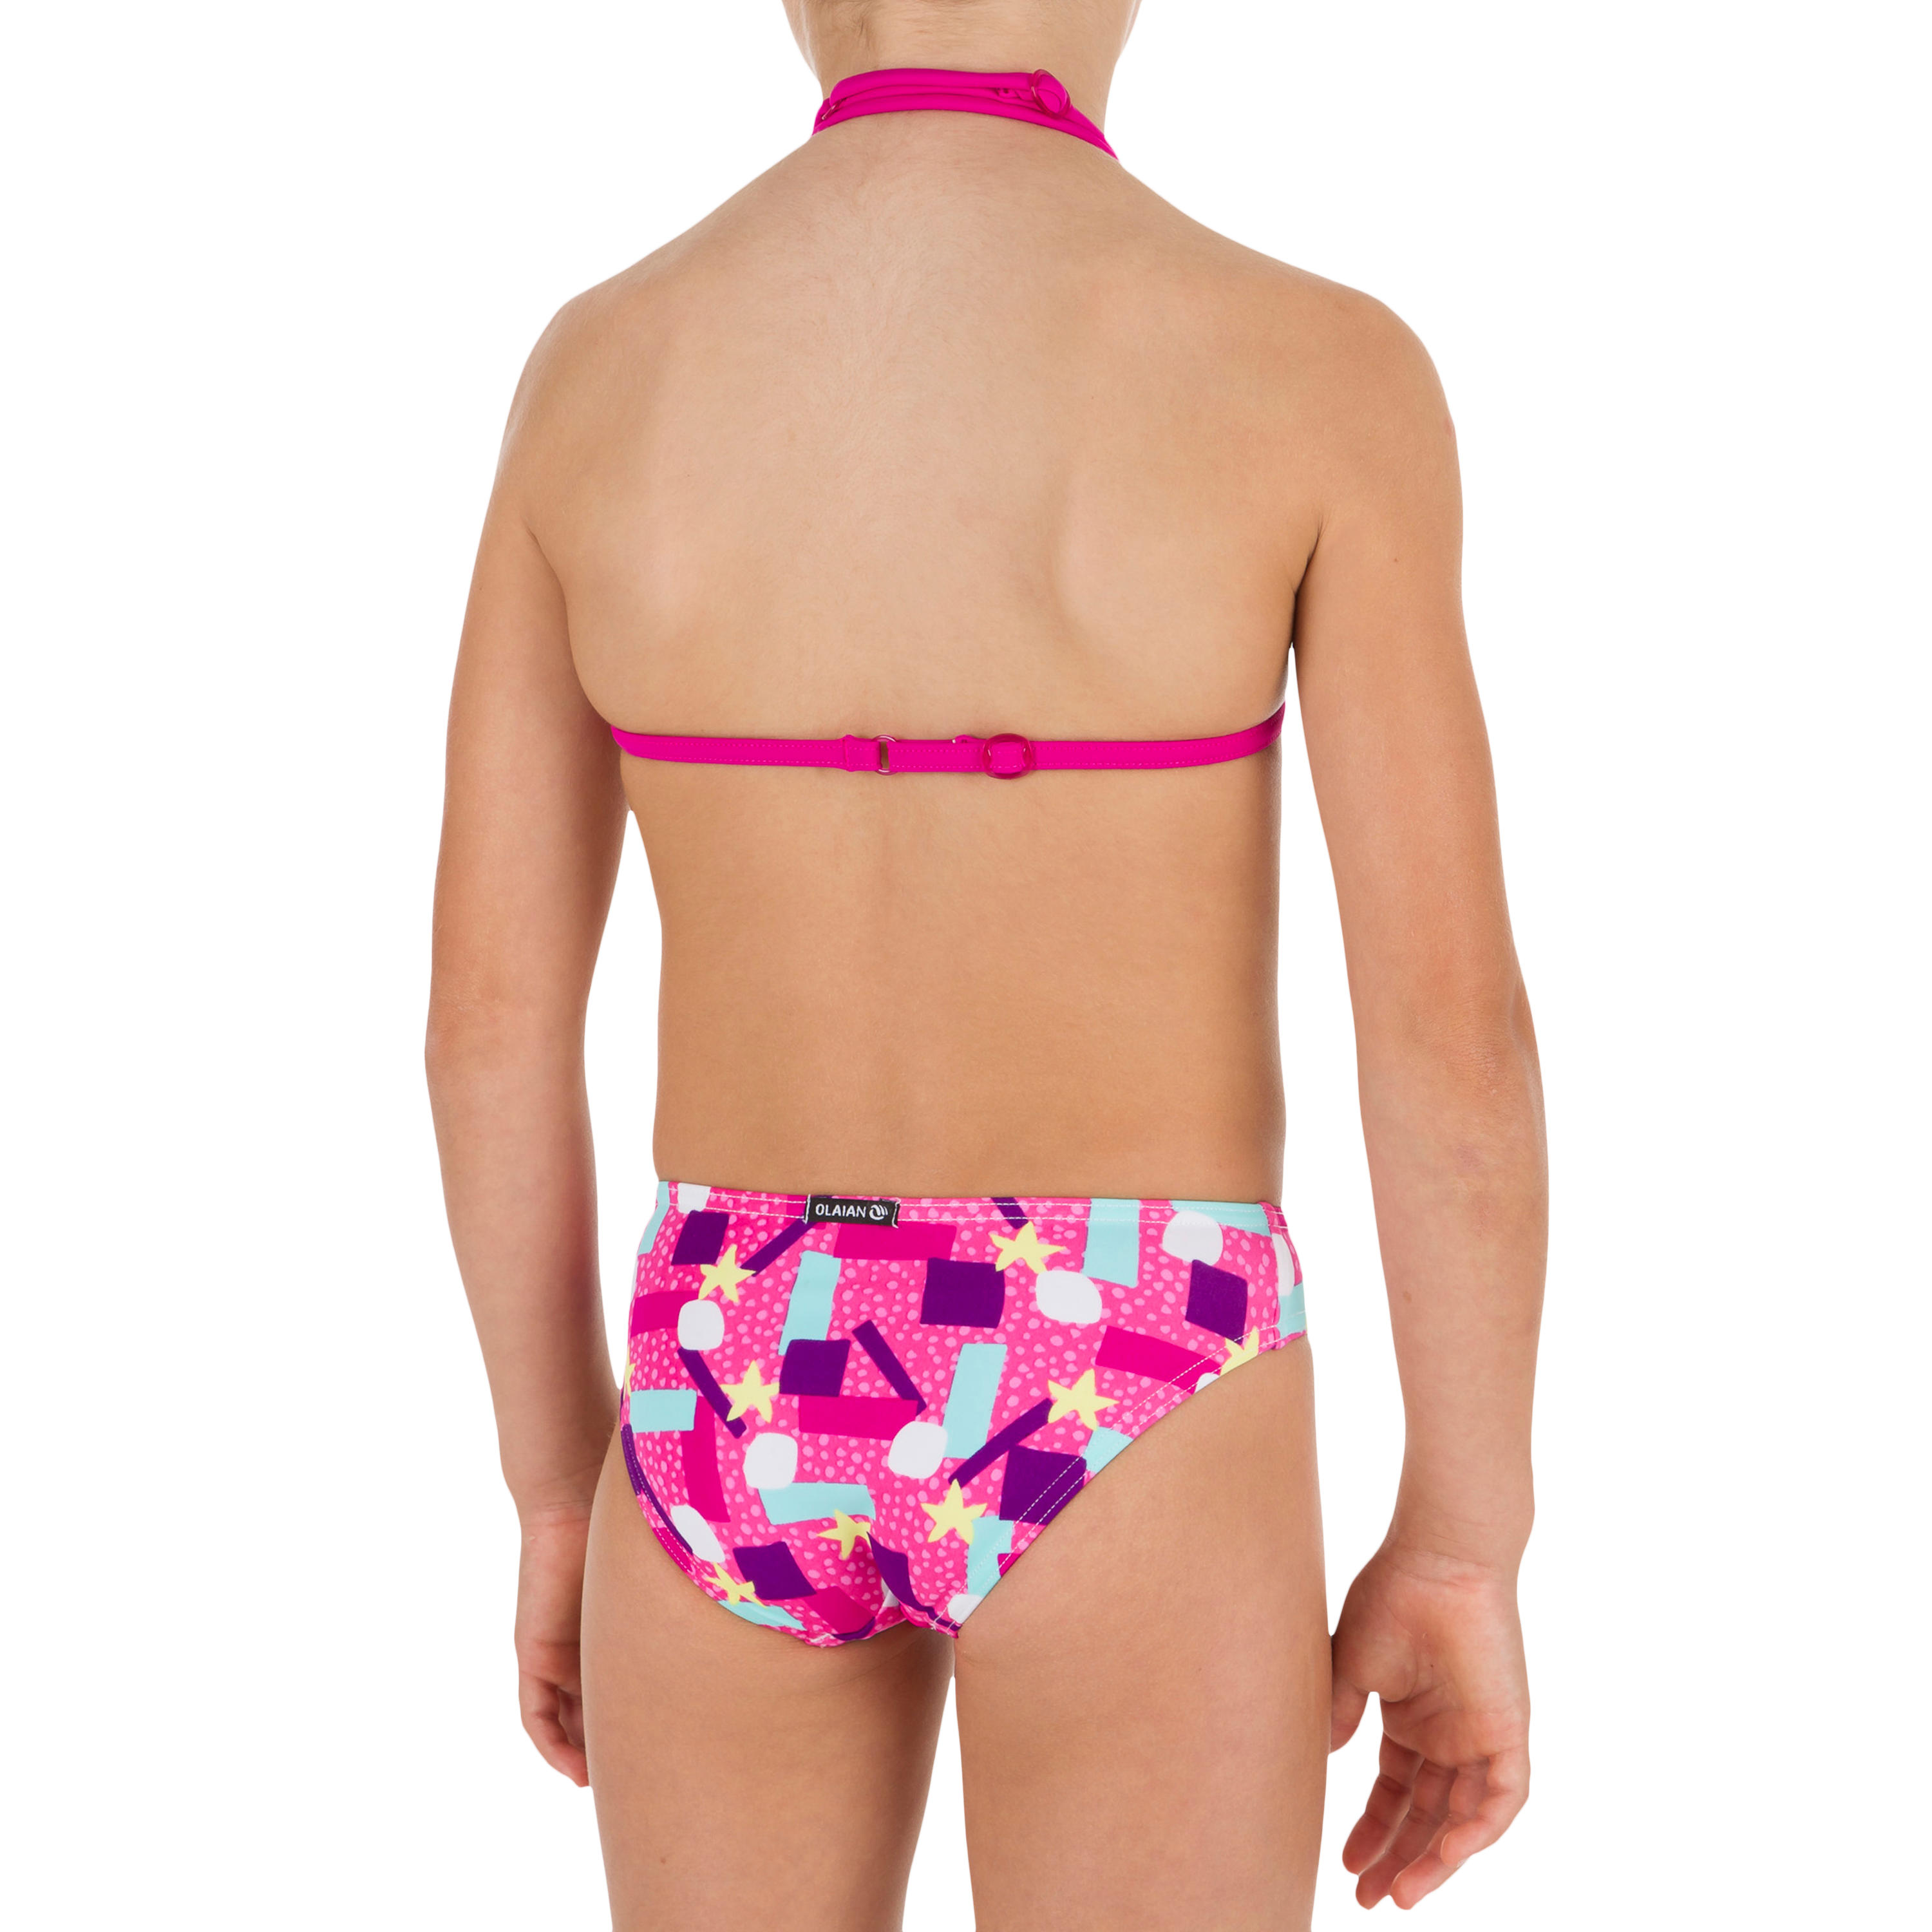 Taloo Girls' Two-Piece Triangle Bikini Swimsuit - Lagoon Pink 4/8